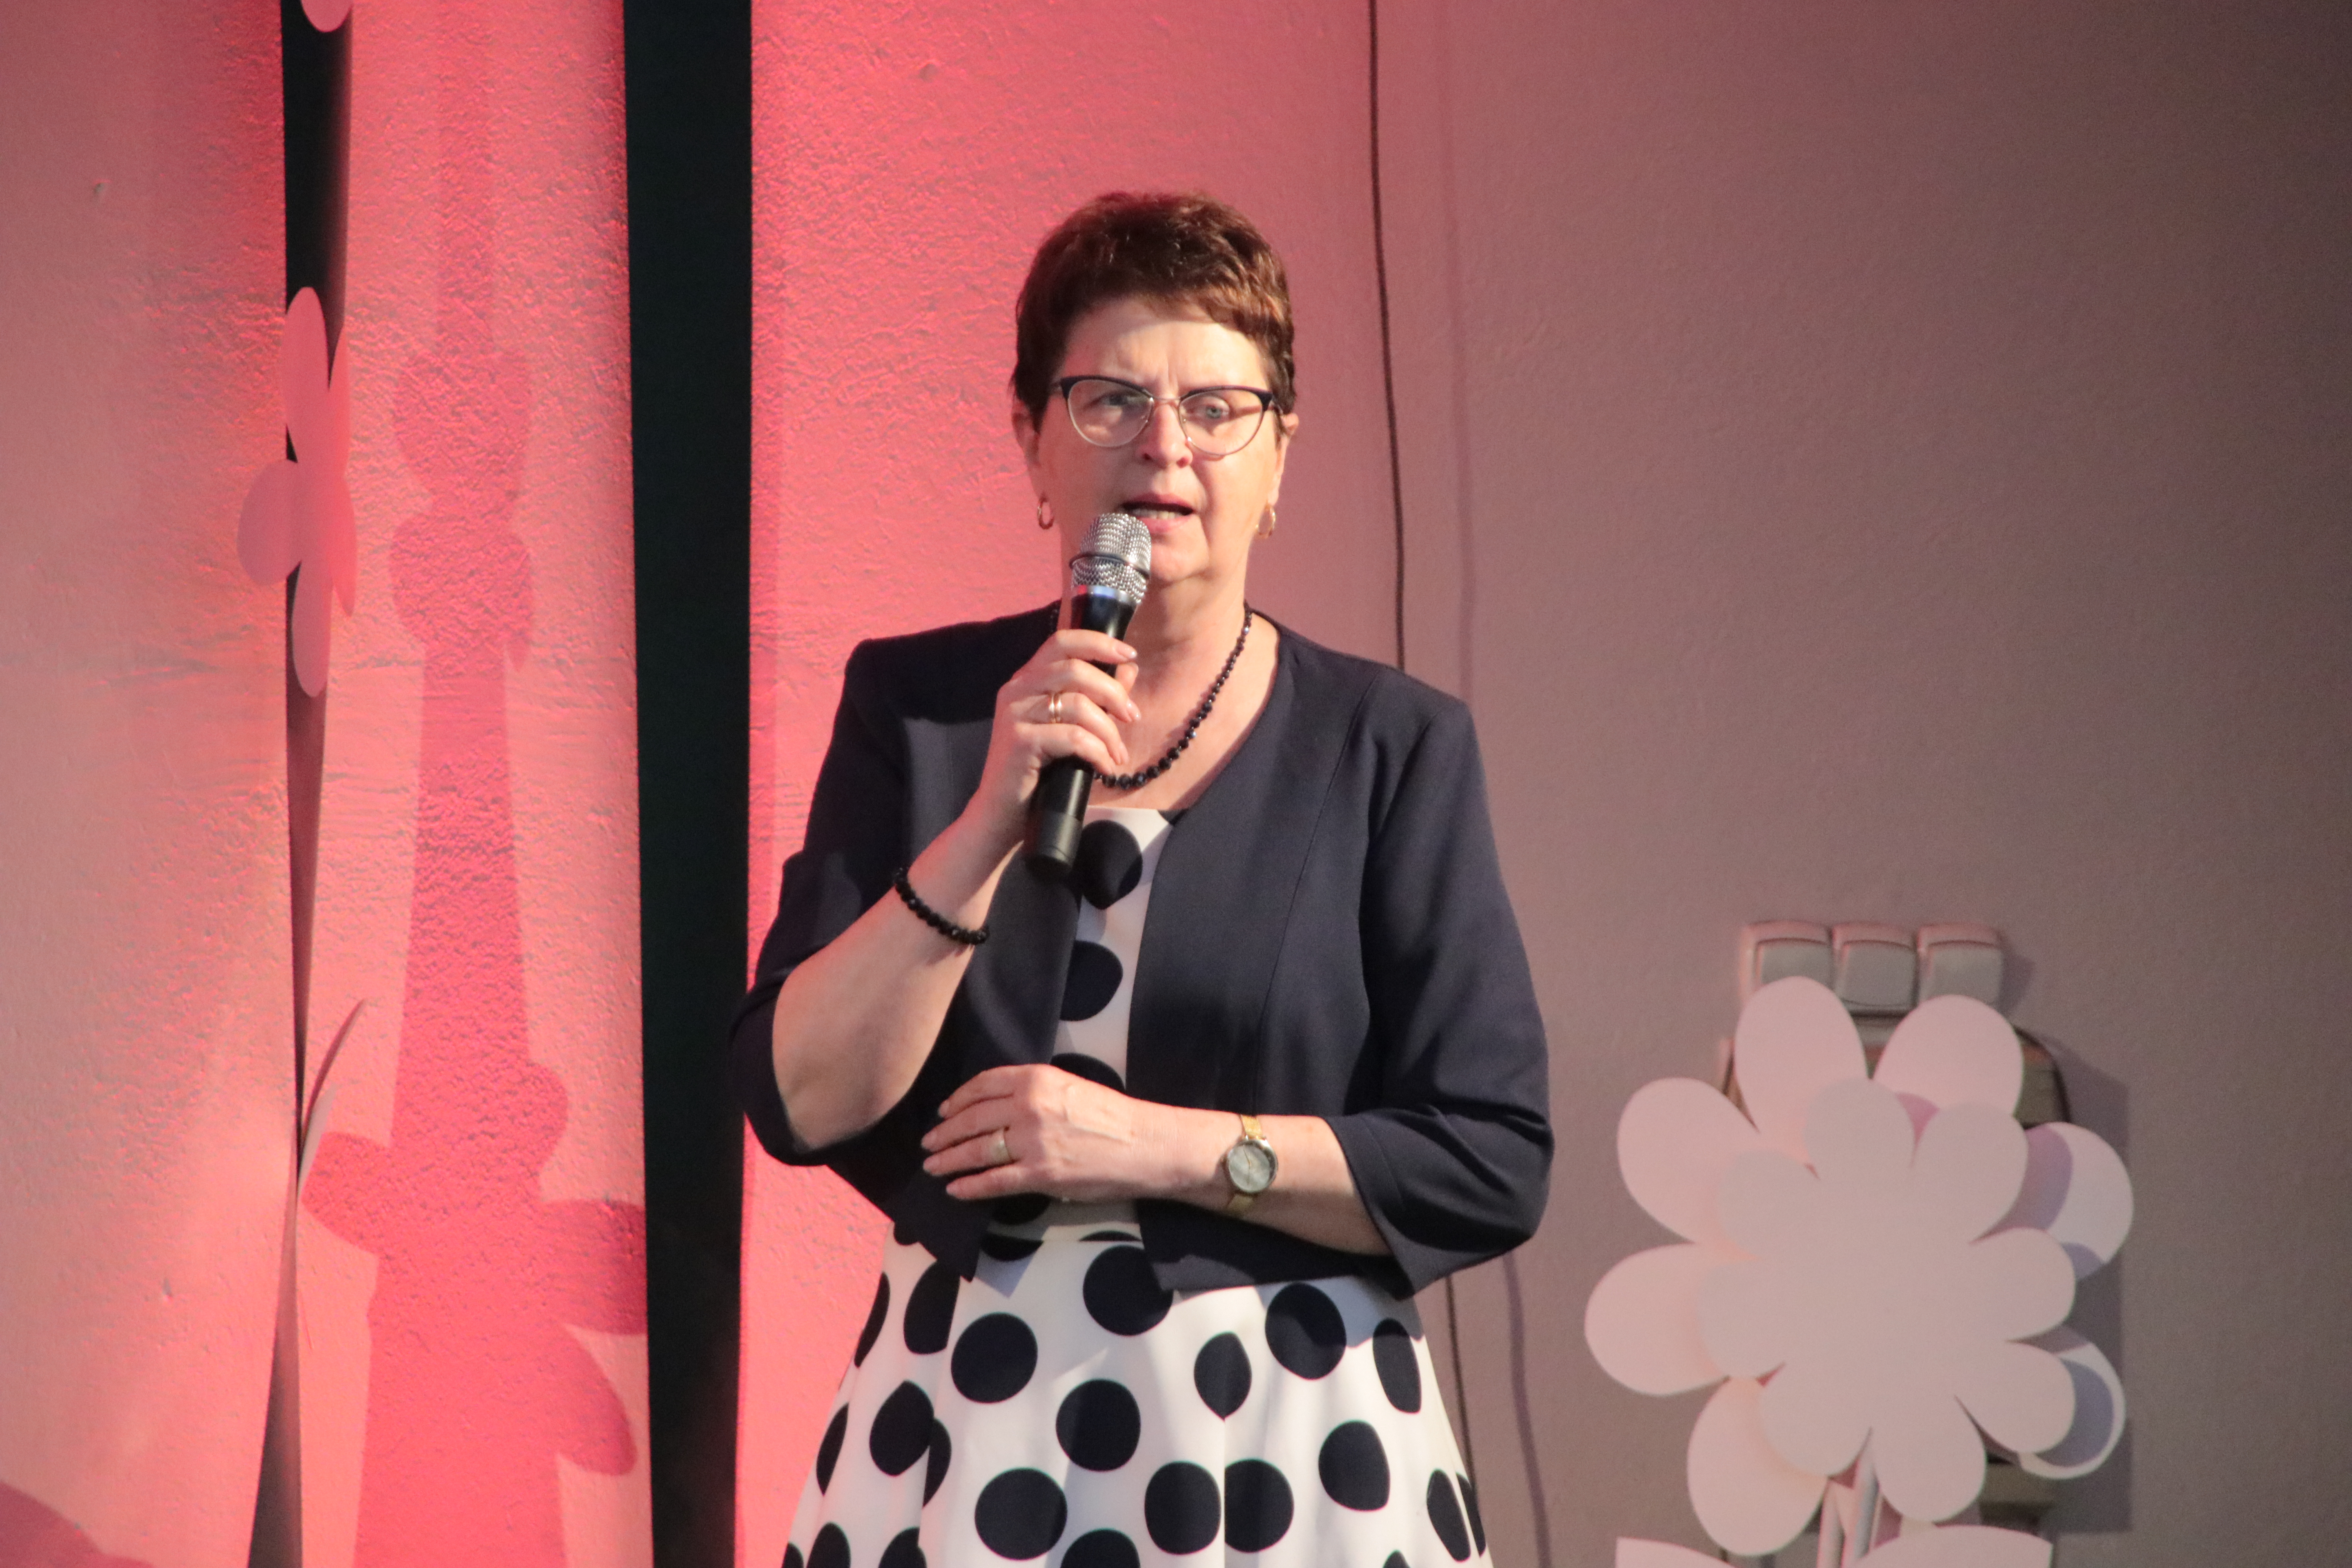 W rolę konferansjerki wcieliła się dr Kornelia Lach, emerytowana dyrektorka Szkoły Podstawowej w Krzanowicach